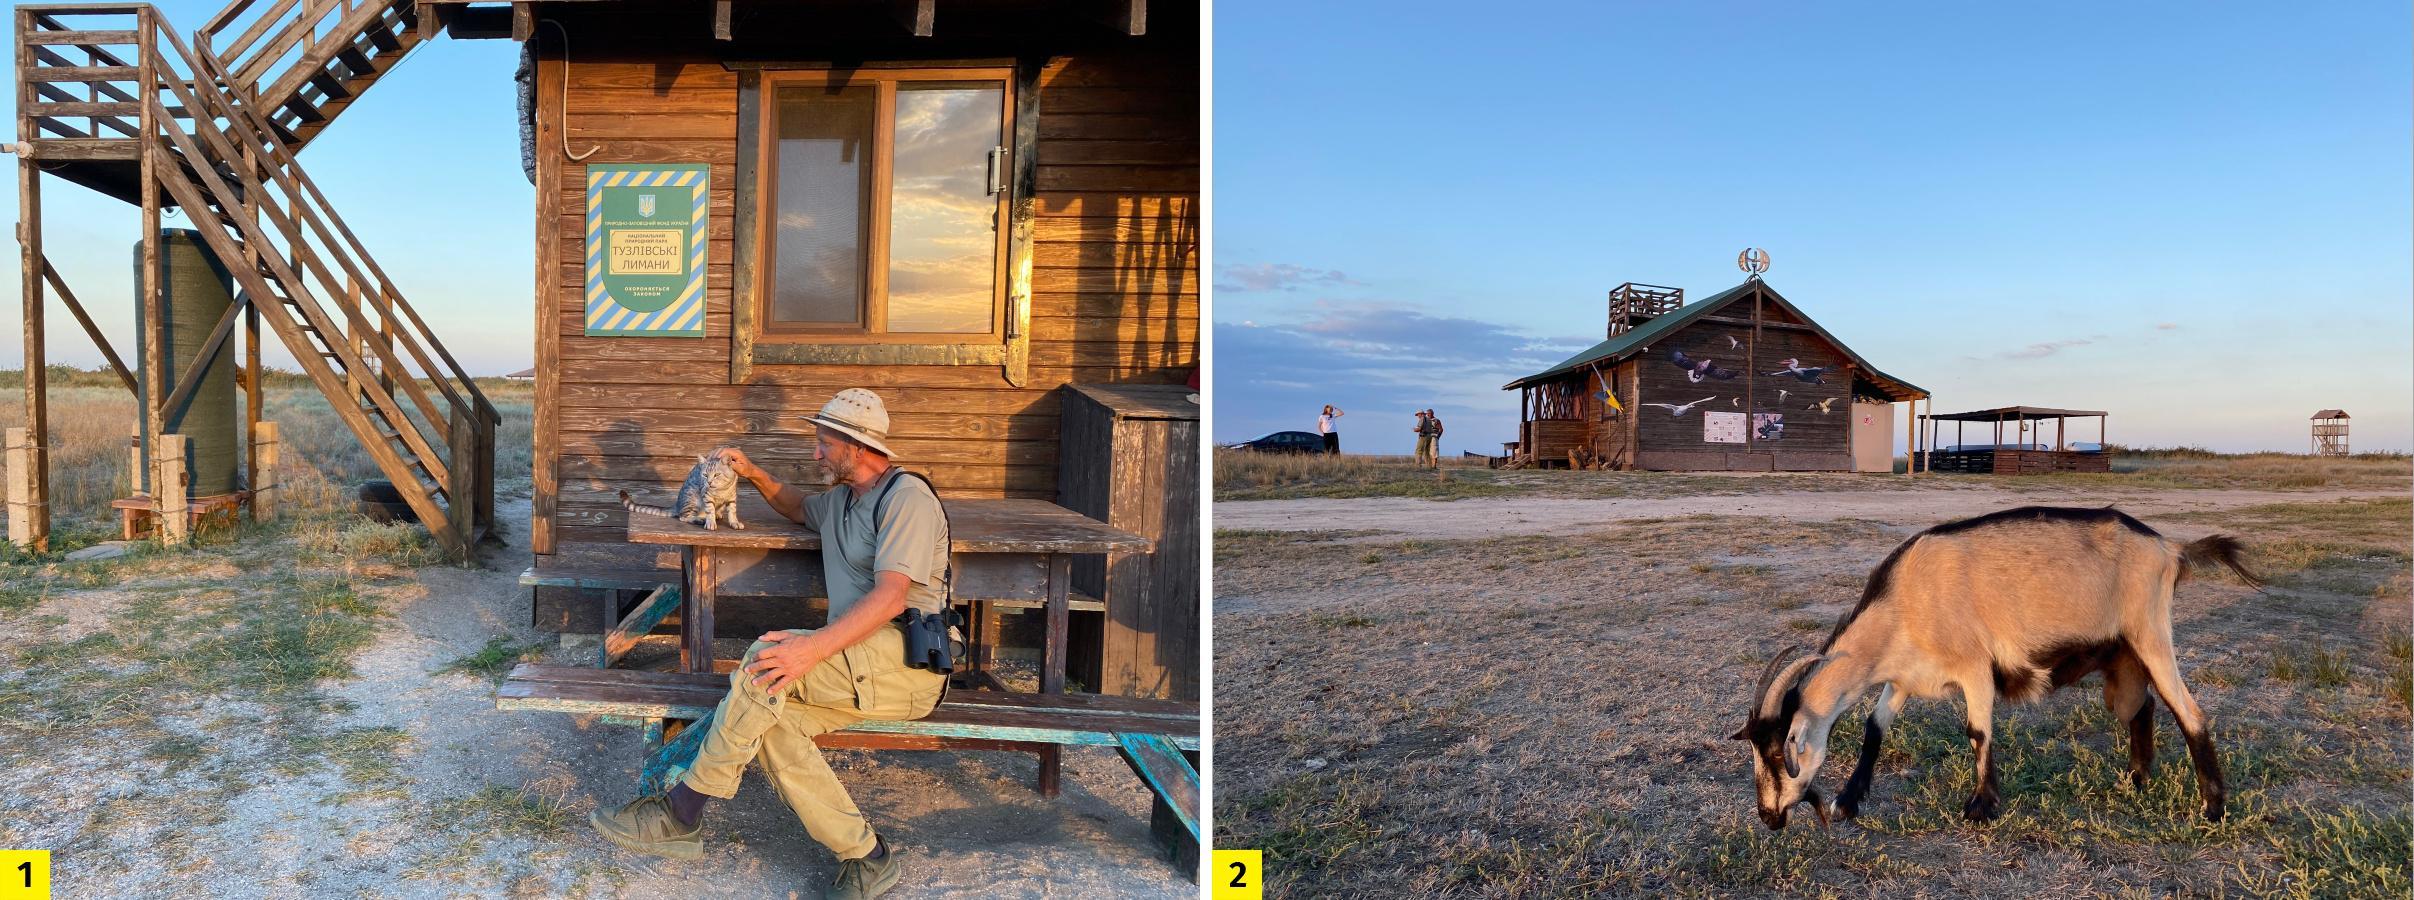 Іван Русєв (1) уже кілька років живе на території спостережного пункту (2) на березі лиману (фото Мар’яни Вербовської)